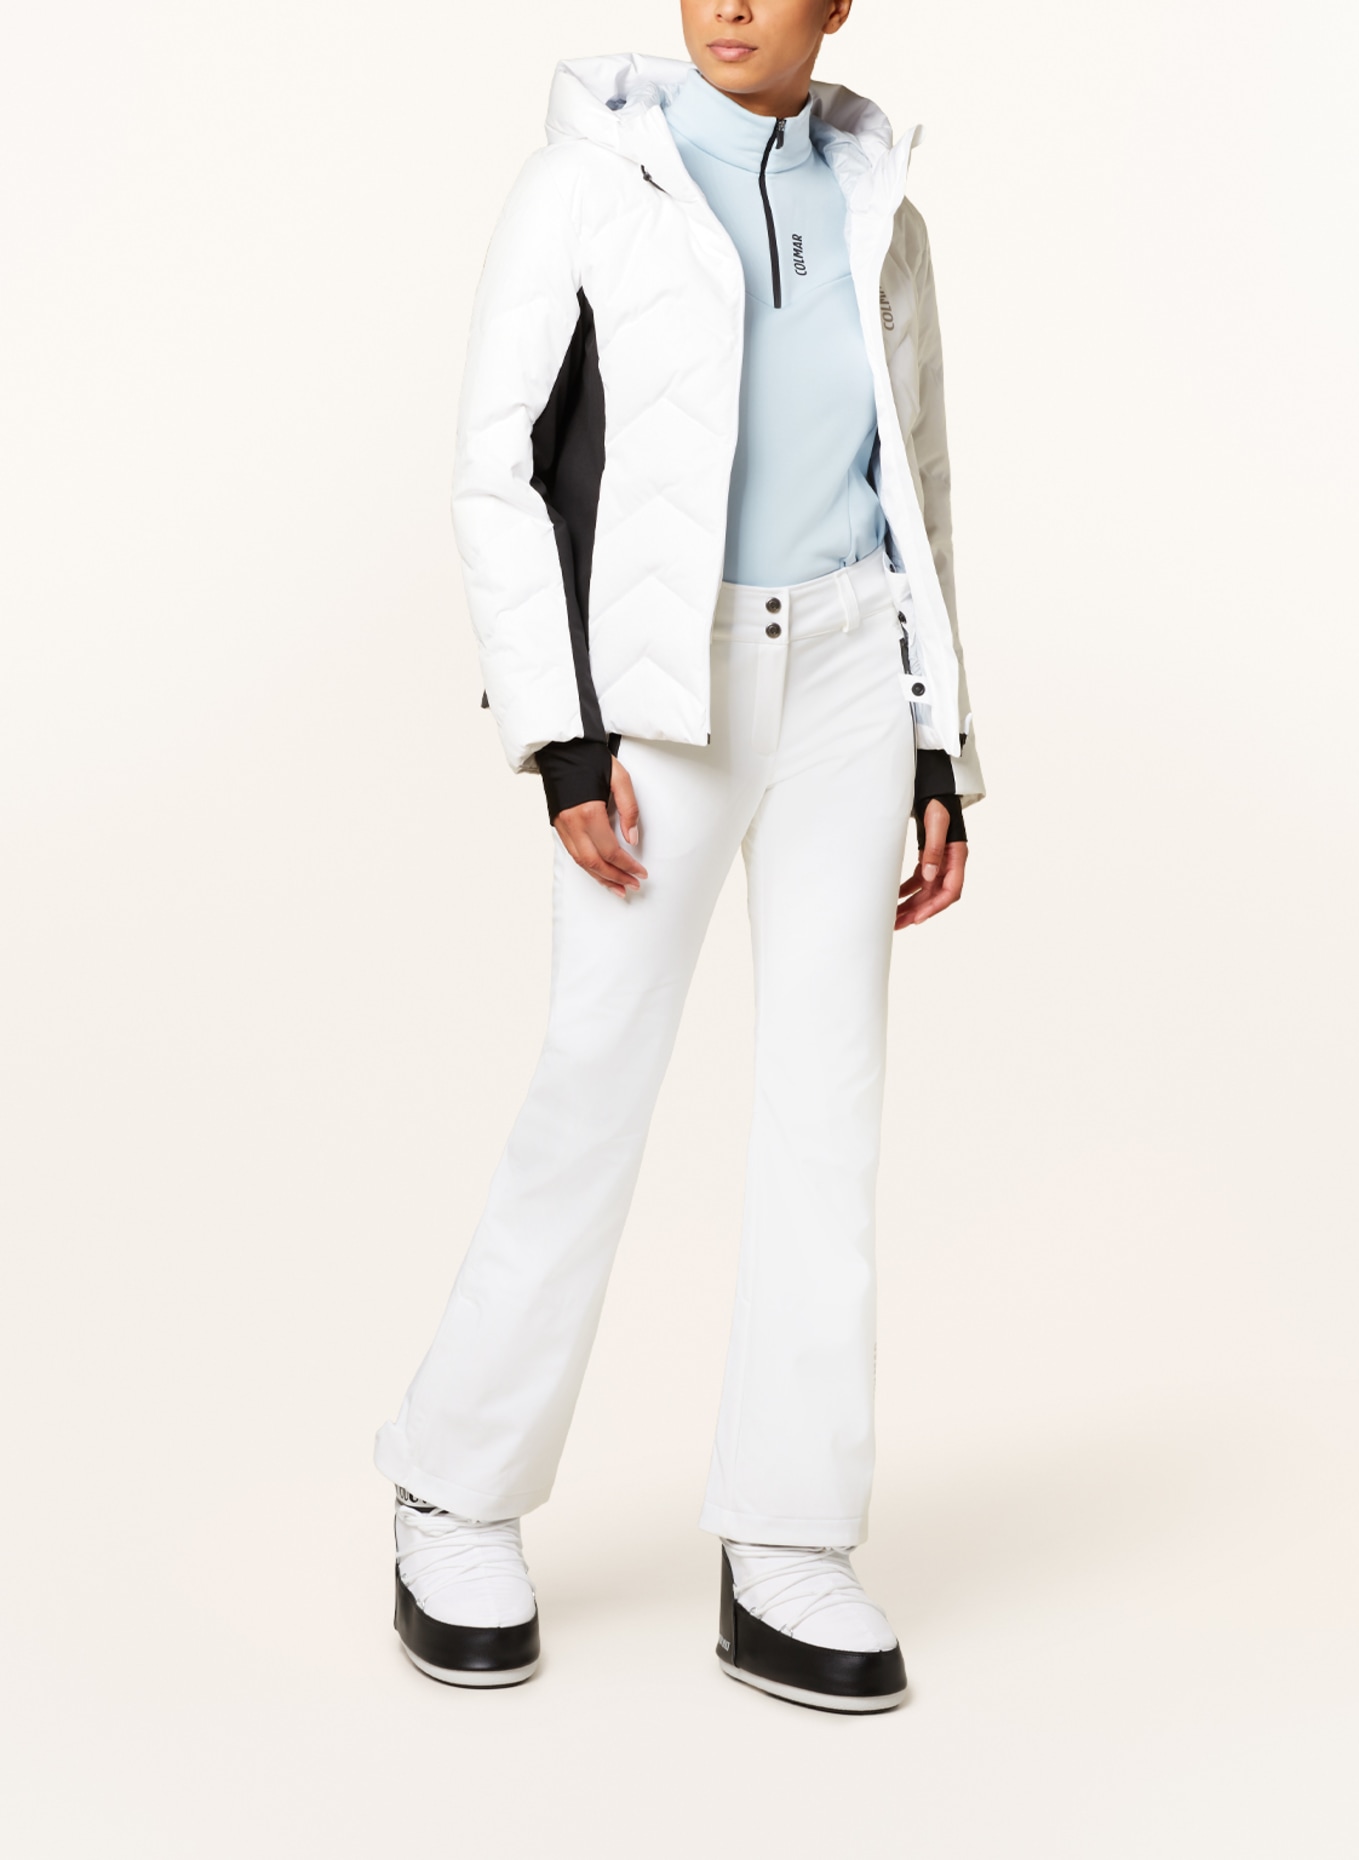 Stretch ski jacket with elasticated waistband - Colmar